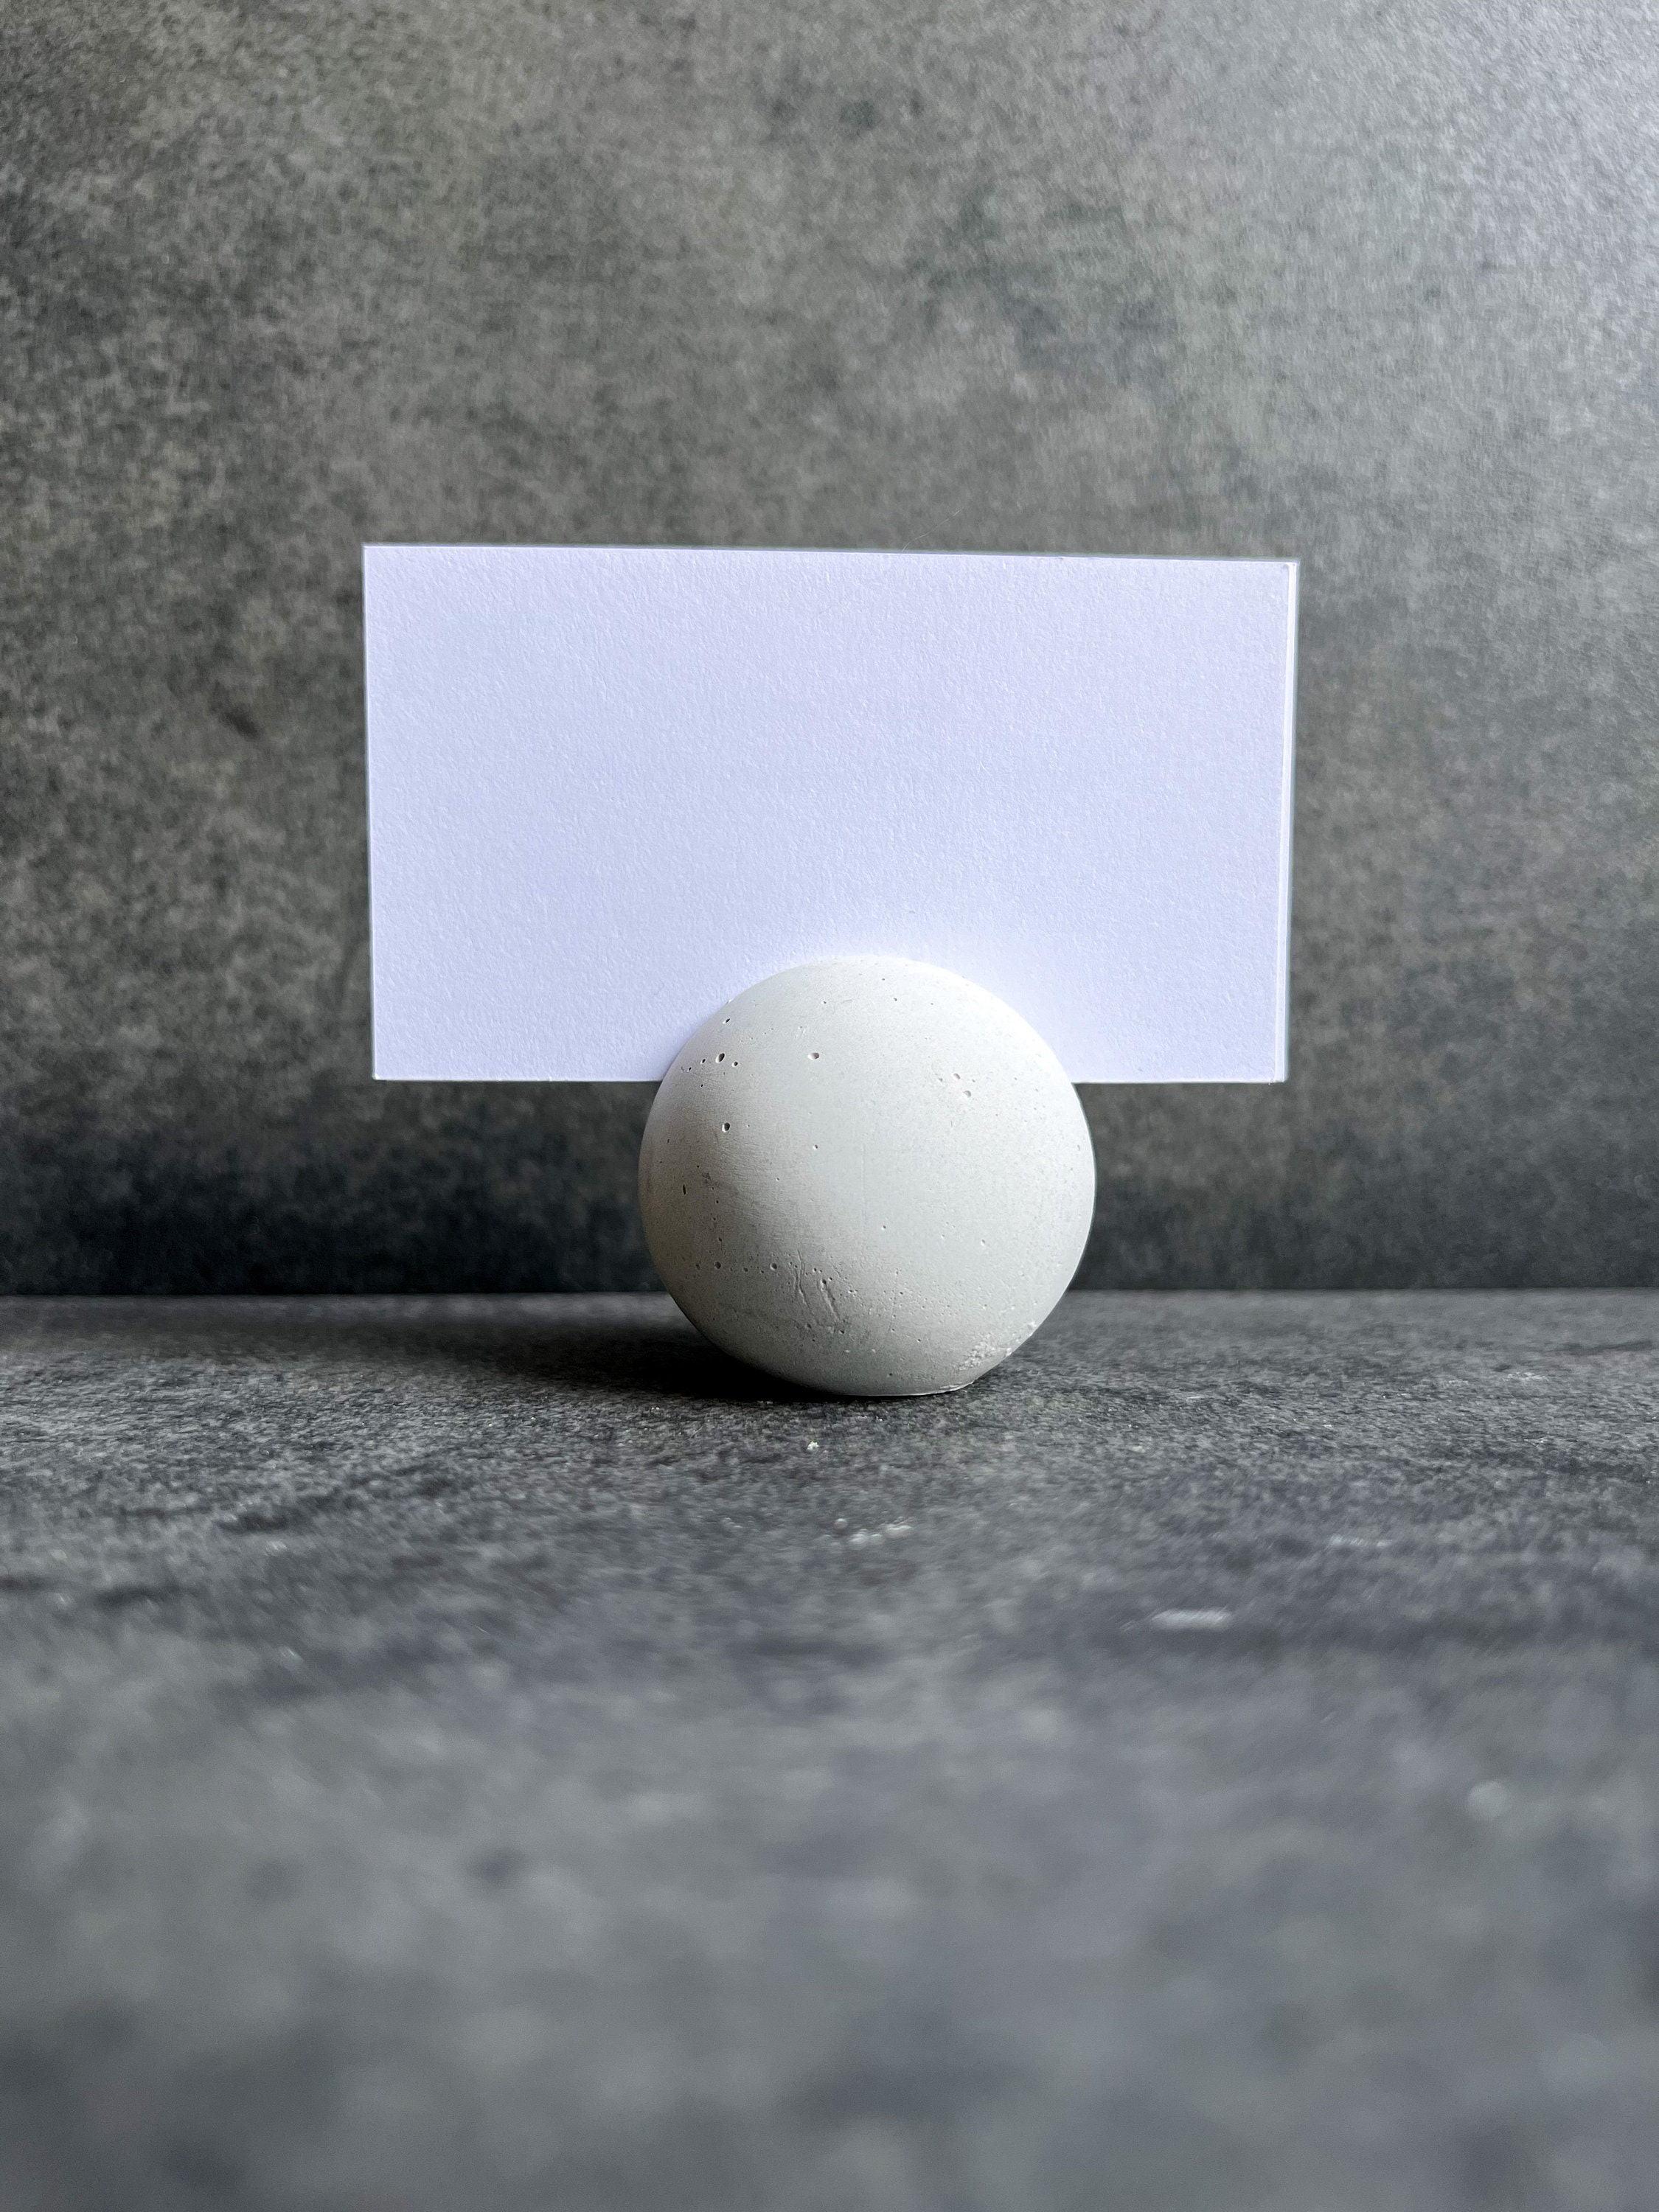 Ball Sphere Mold, Concrete Cement Orb Mold, Garden Decor Mold – AUTUMN